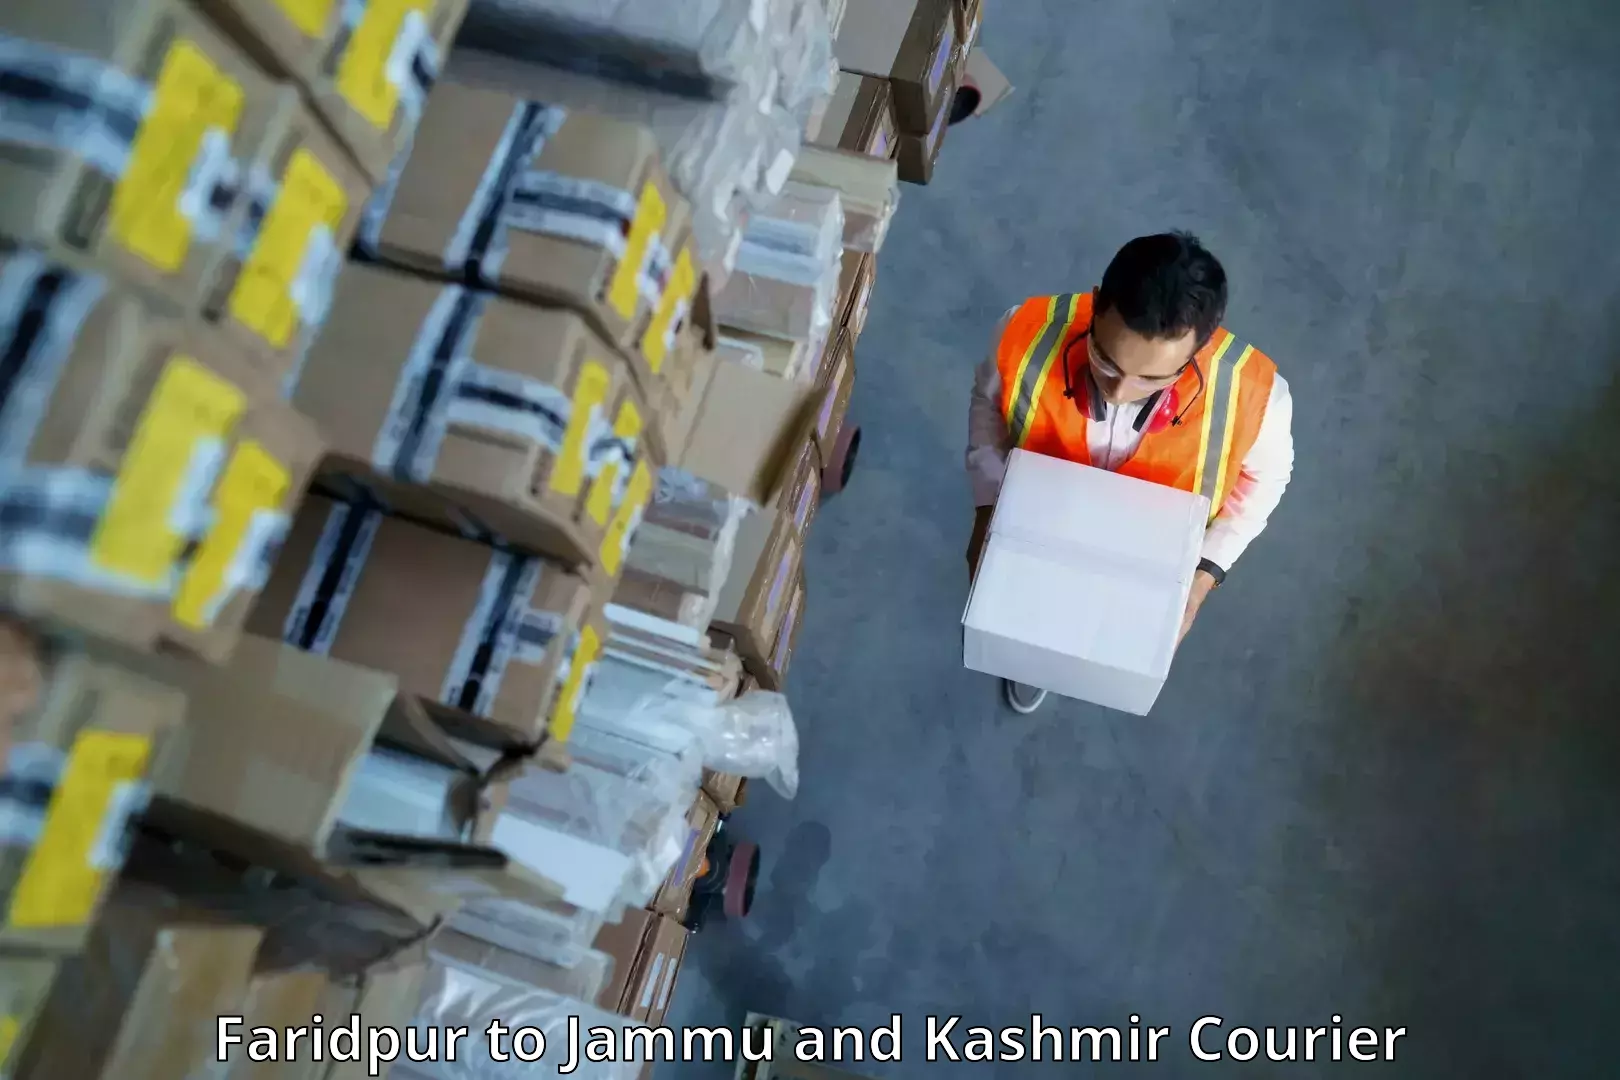 Express logistics providers Faridpur to Srinagar Kashmir